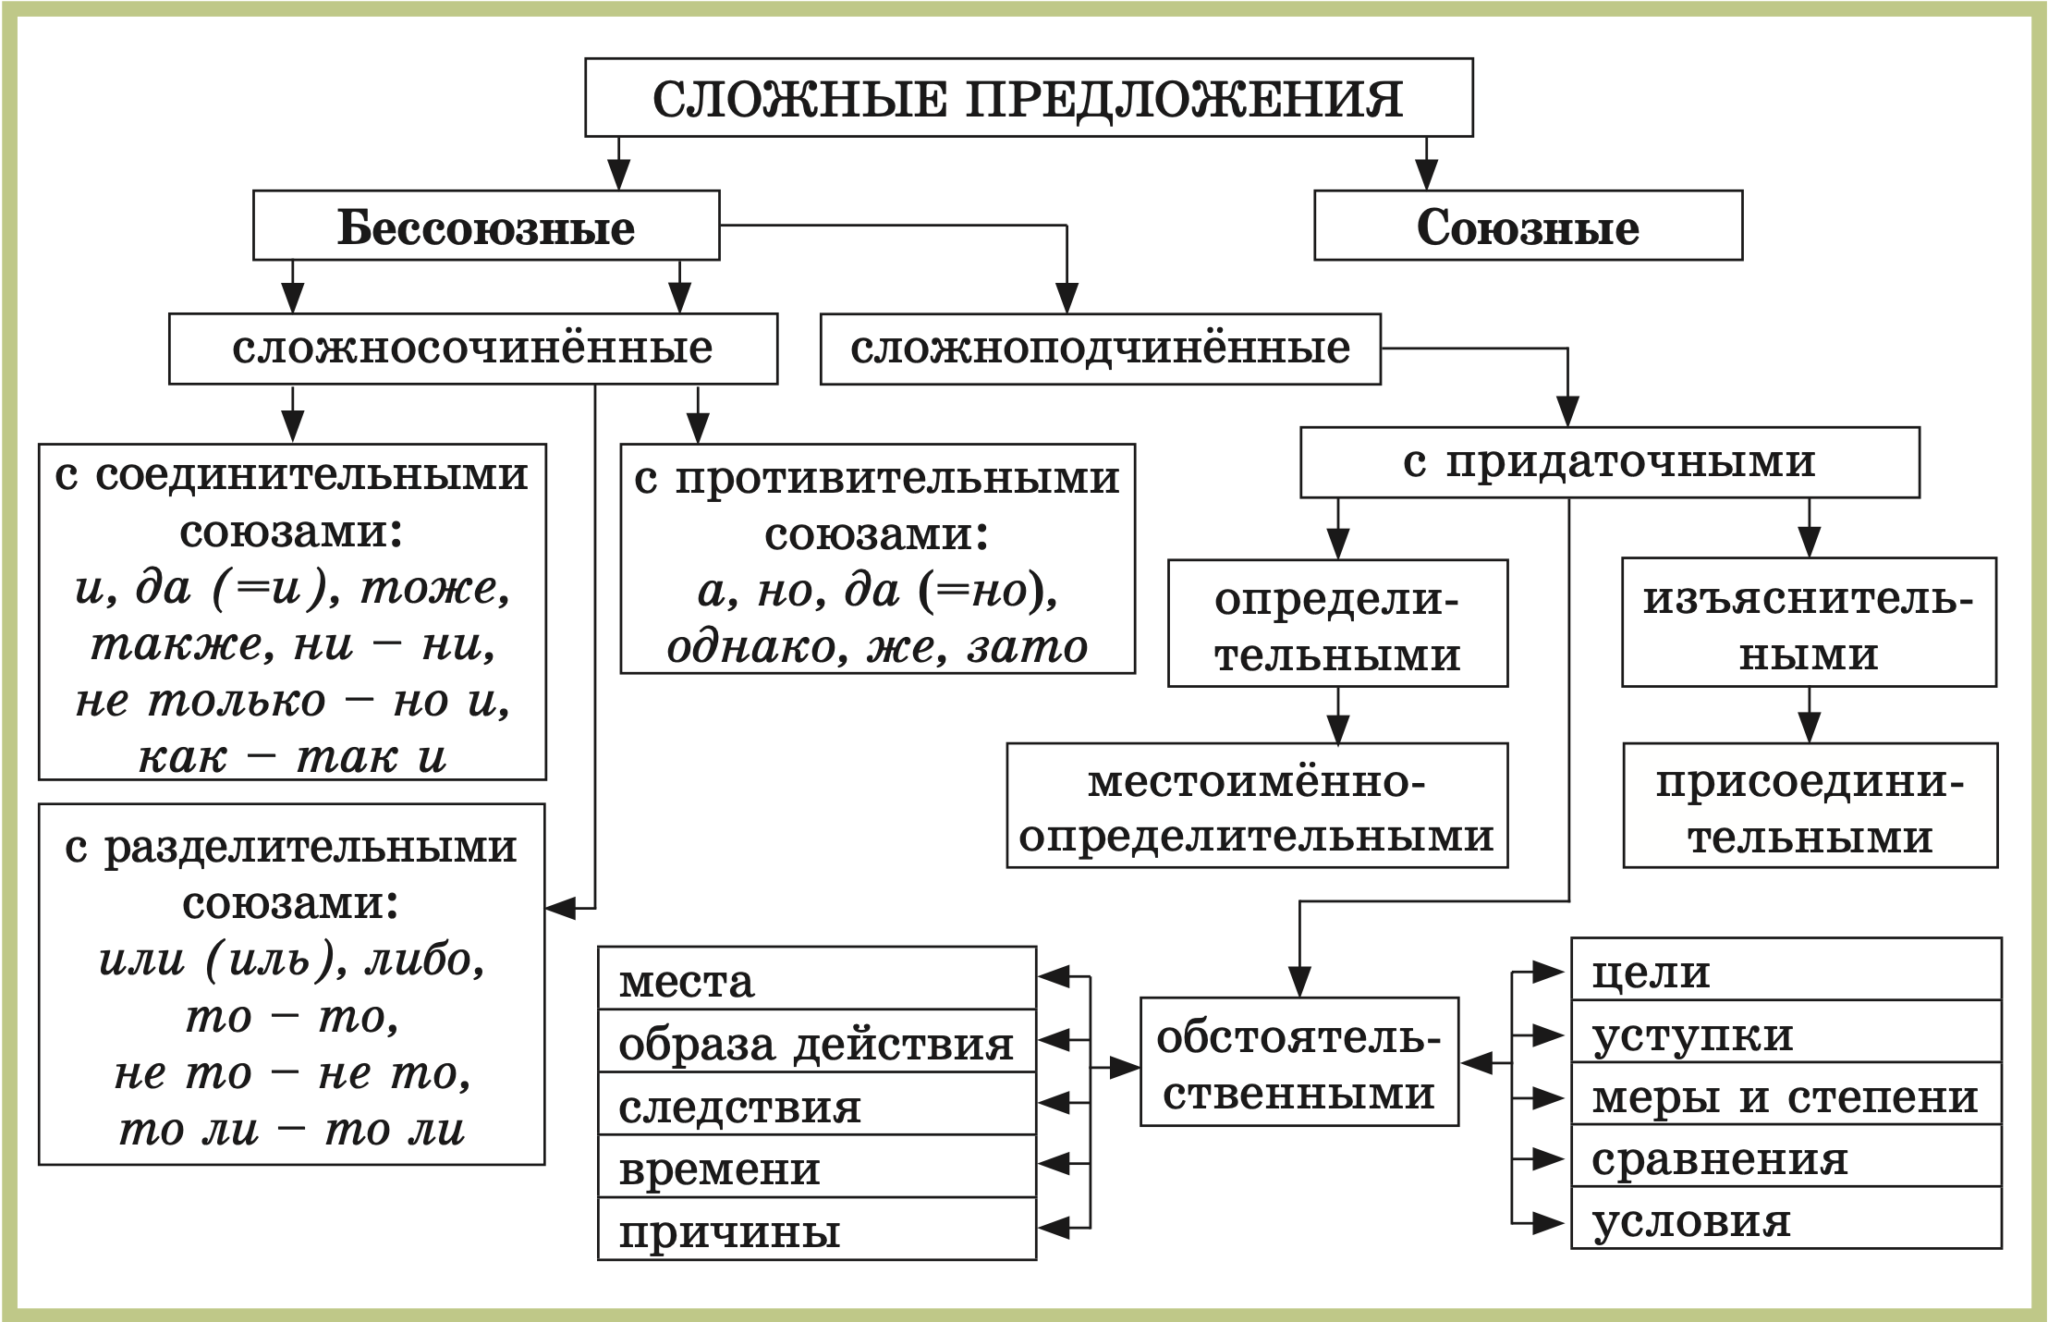 Типы сложных предложений 9 класс презентация. Схемы русский язык 5 класс виды сложных предложений. Схема виды сложных предложений 9 класс. Схема сложного предложения 5 класс. Схема сложного предложения сложносочиненного.